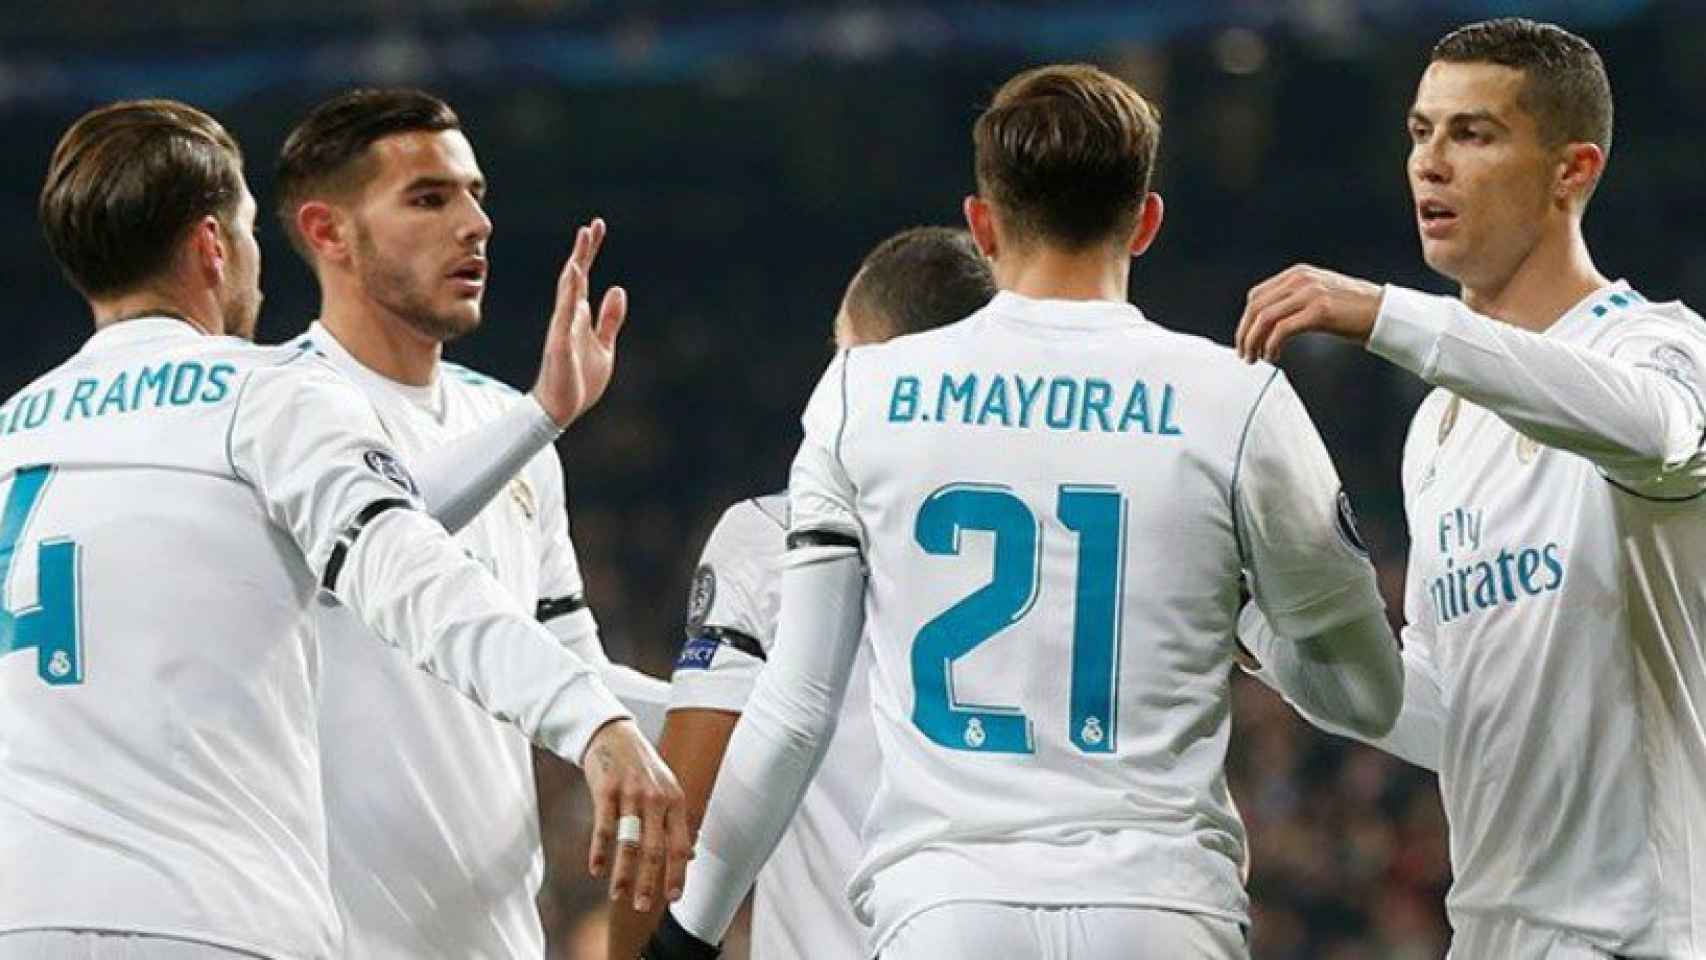 Los jugadores del Real Madrid felicitan a Mayoral por su gol